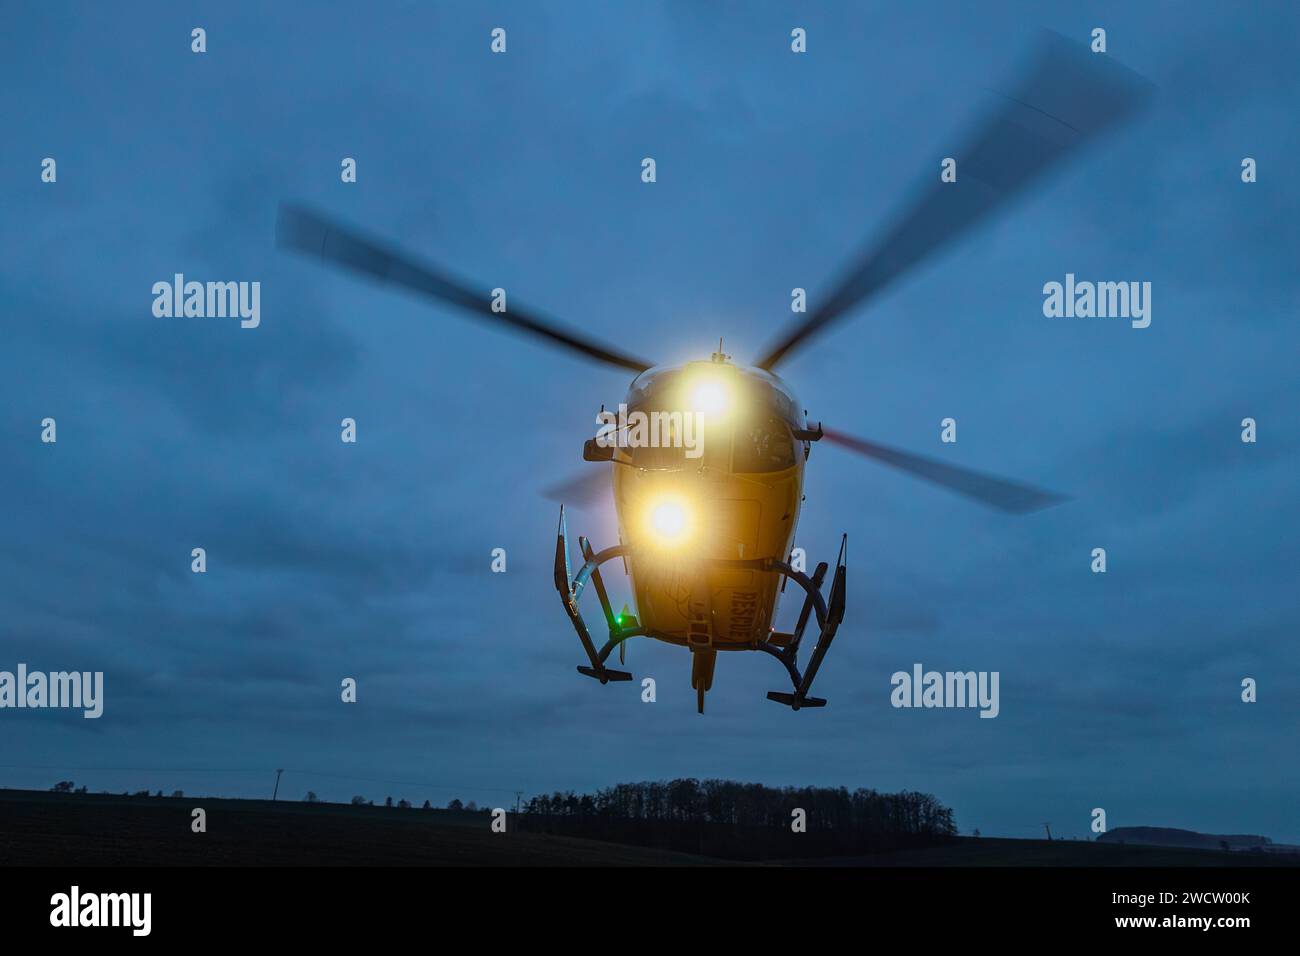 Hubschrauber des medizinischen Notdienstes während des Starts in der Nacht. Themen Rettung, Hilfe und Hoffnung. Stockfoto